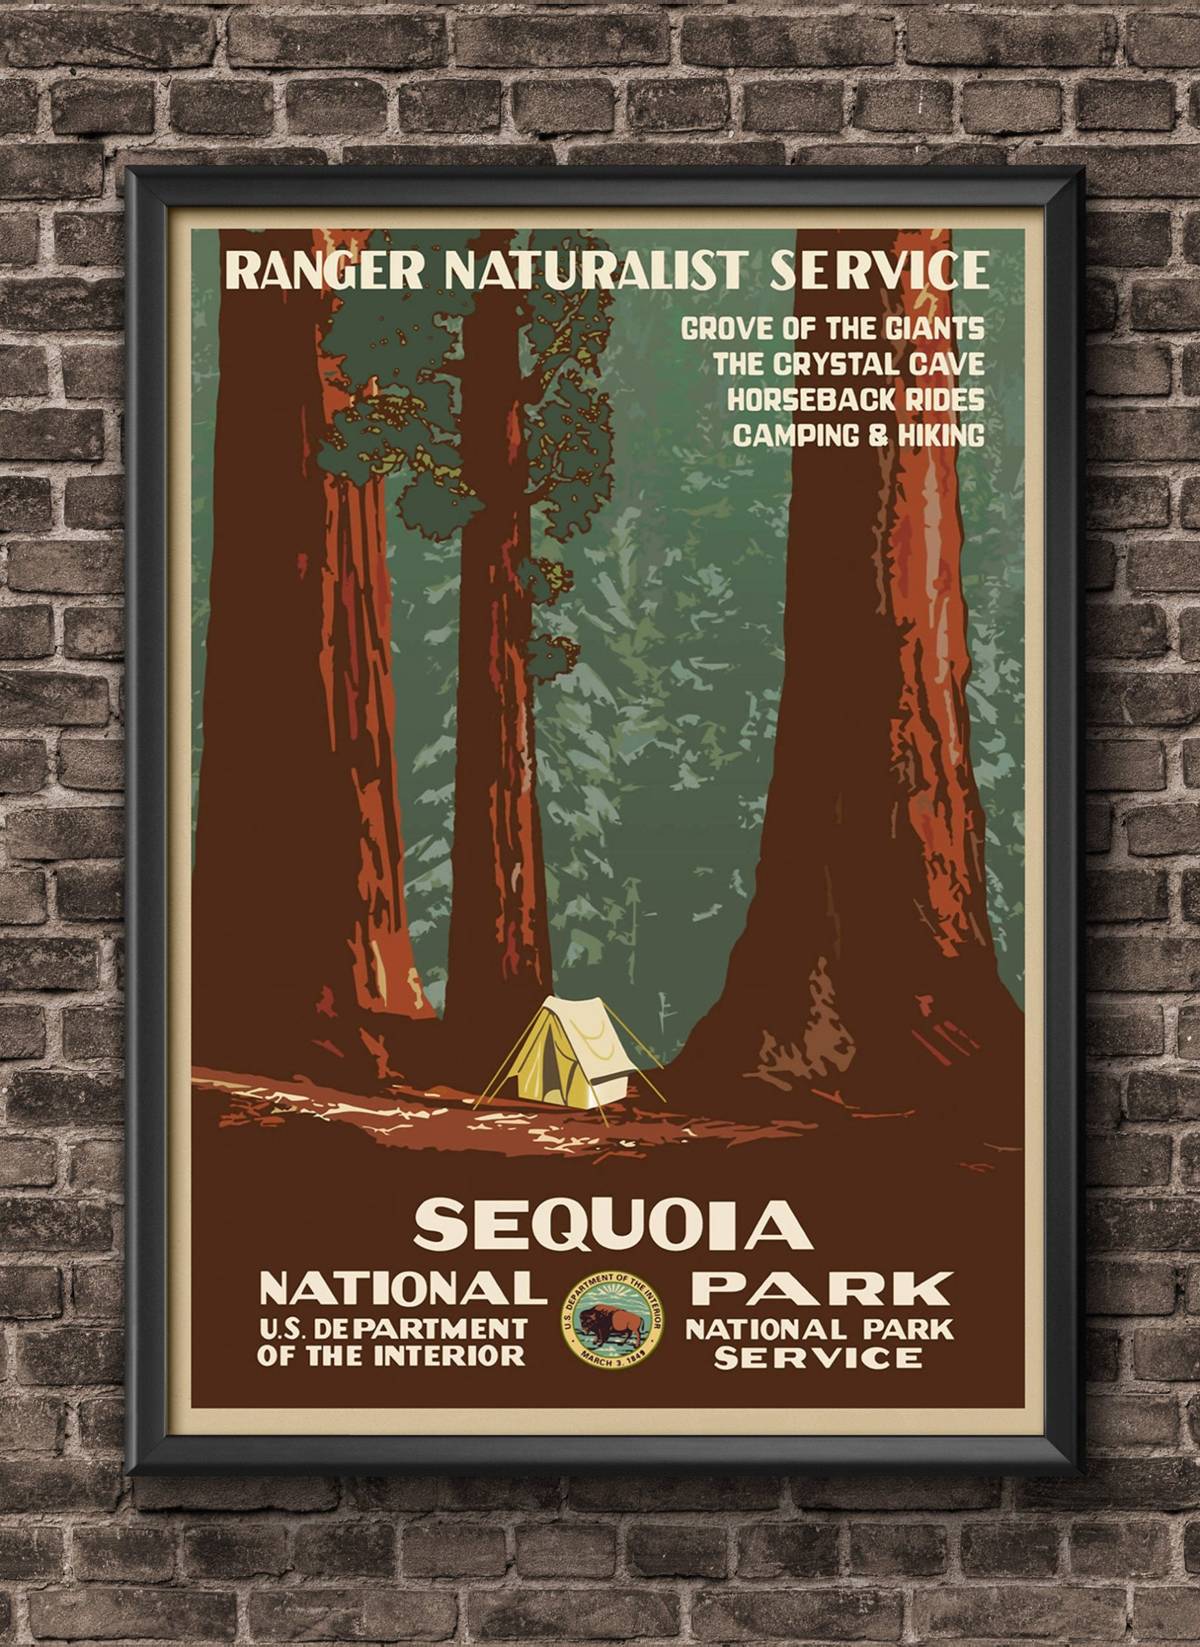 vintage travel poster redwoods